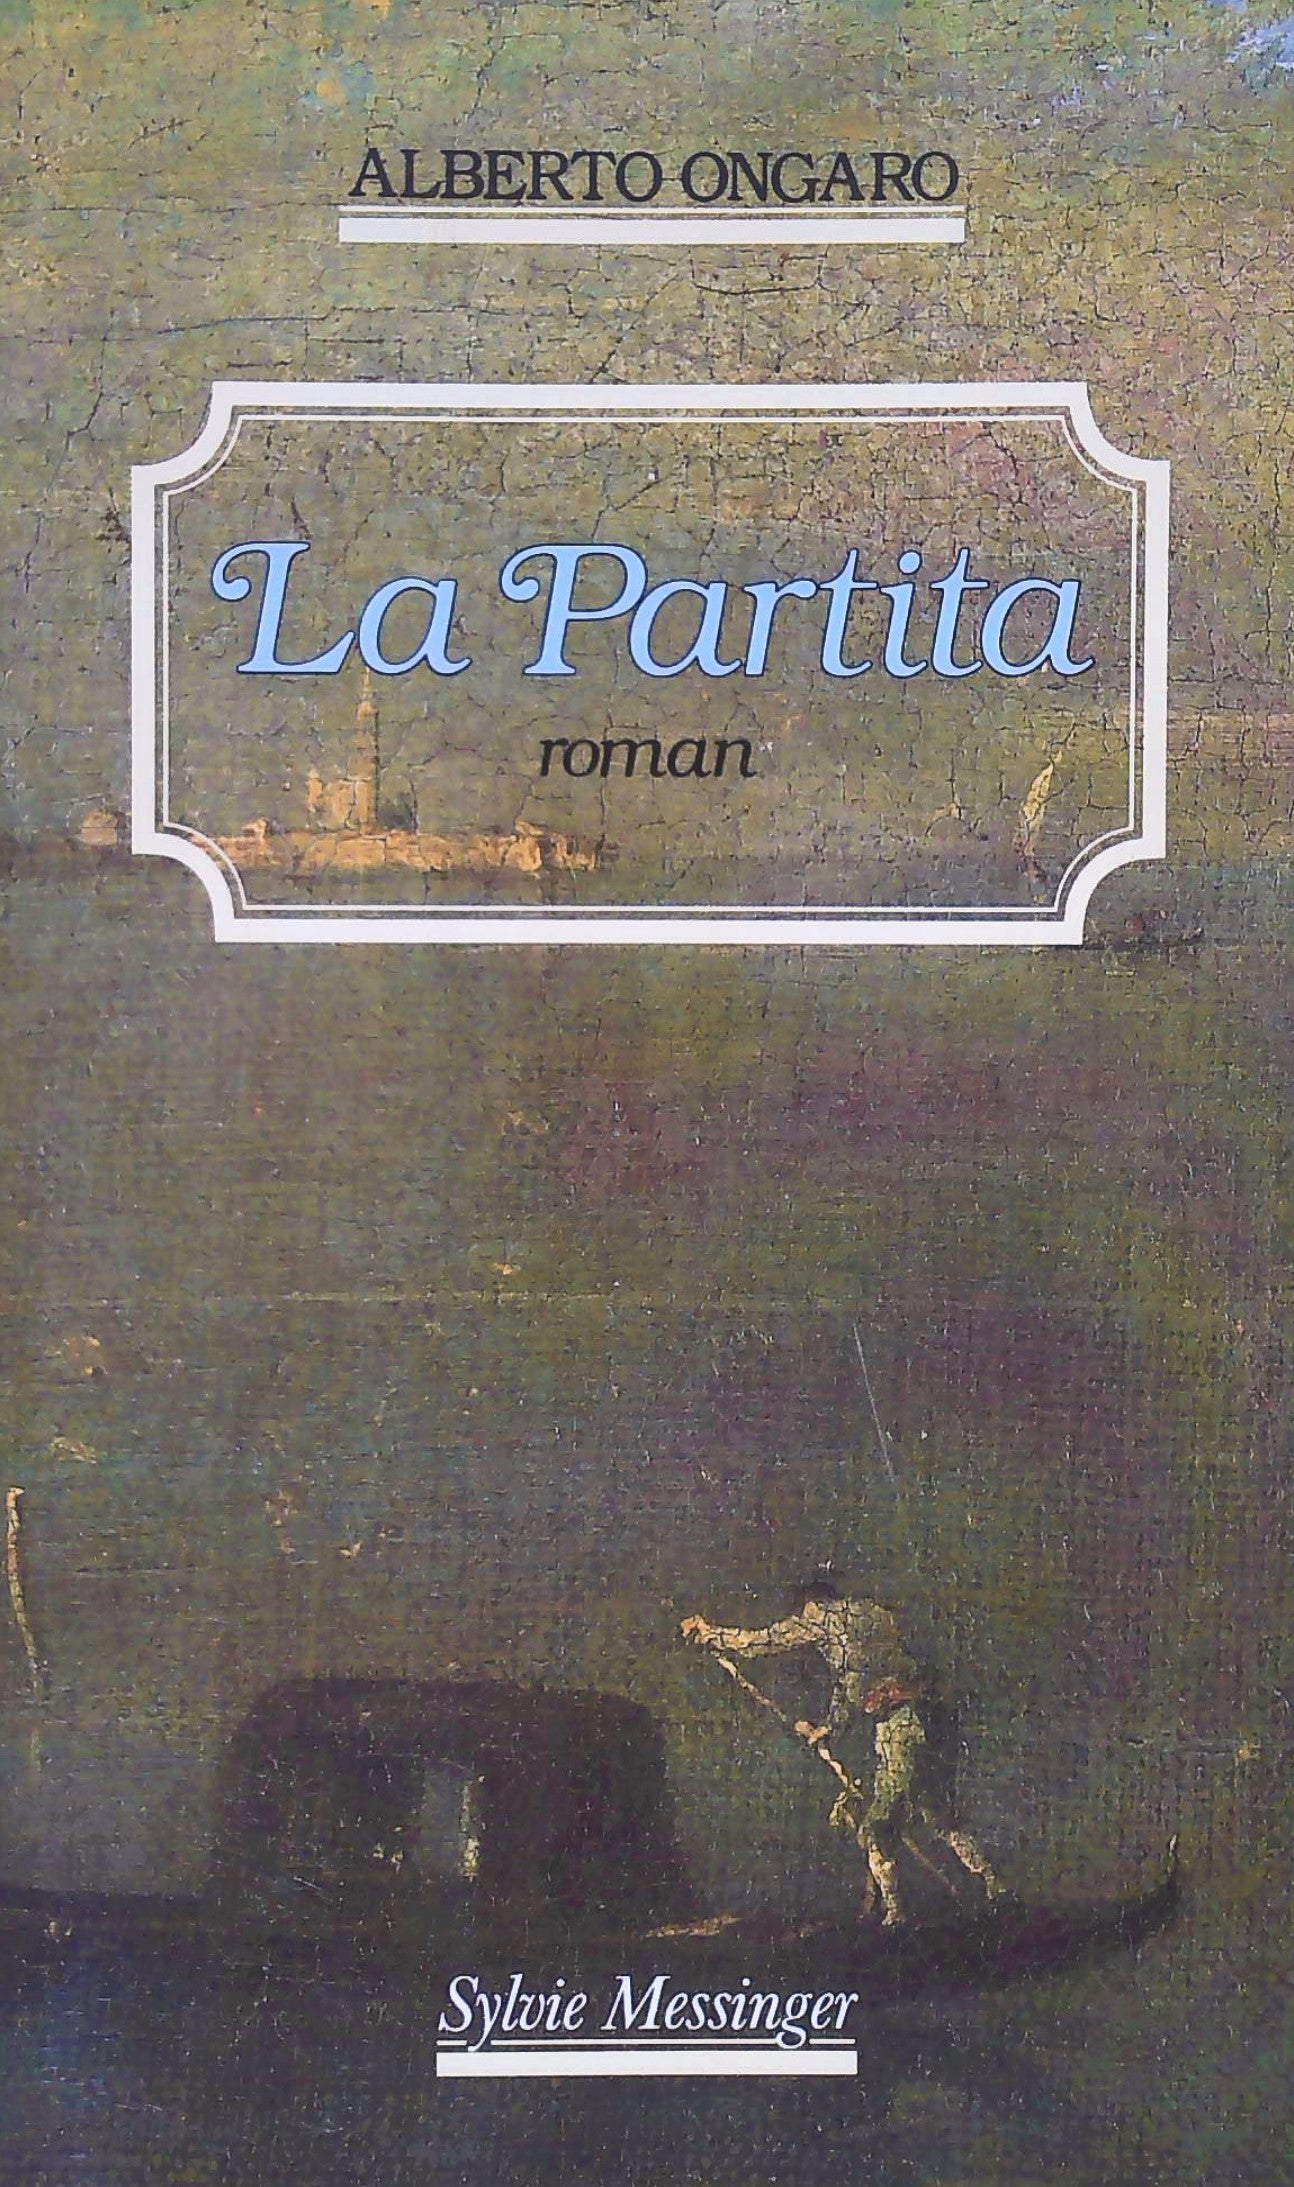 Livre ISBN 2865830764 La Partita (Alberto Ongaro)